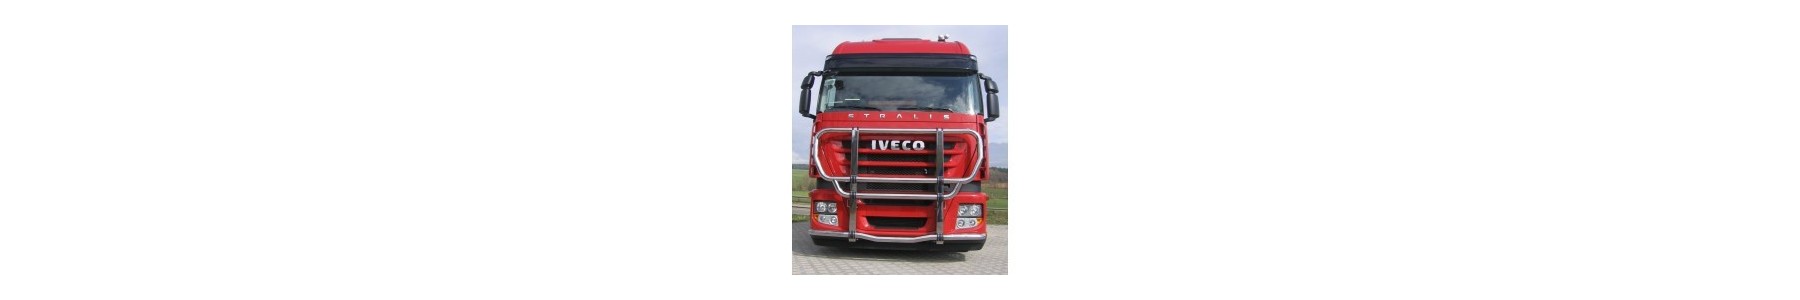 PARE BUFFLE pour votre camion Iveco STRALIS 22h22: Vente accessoires tuning poids lourd